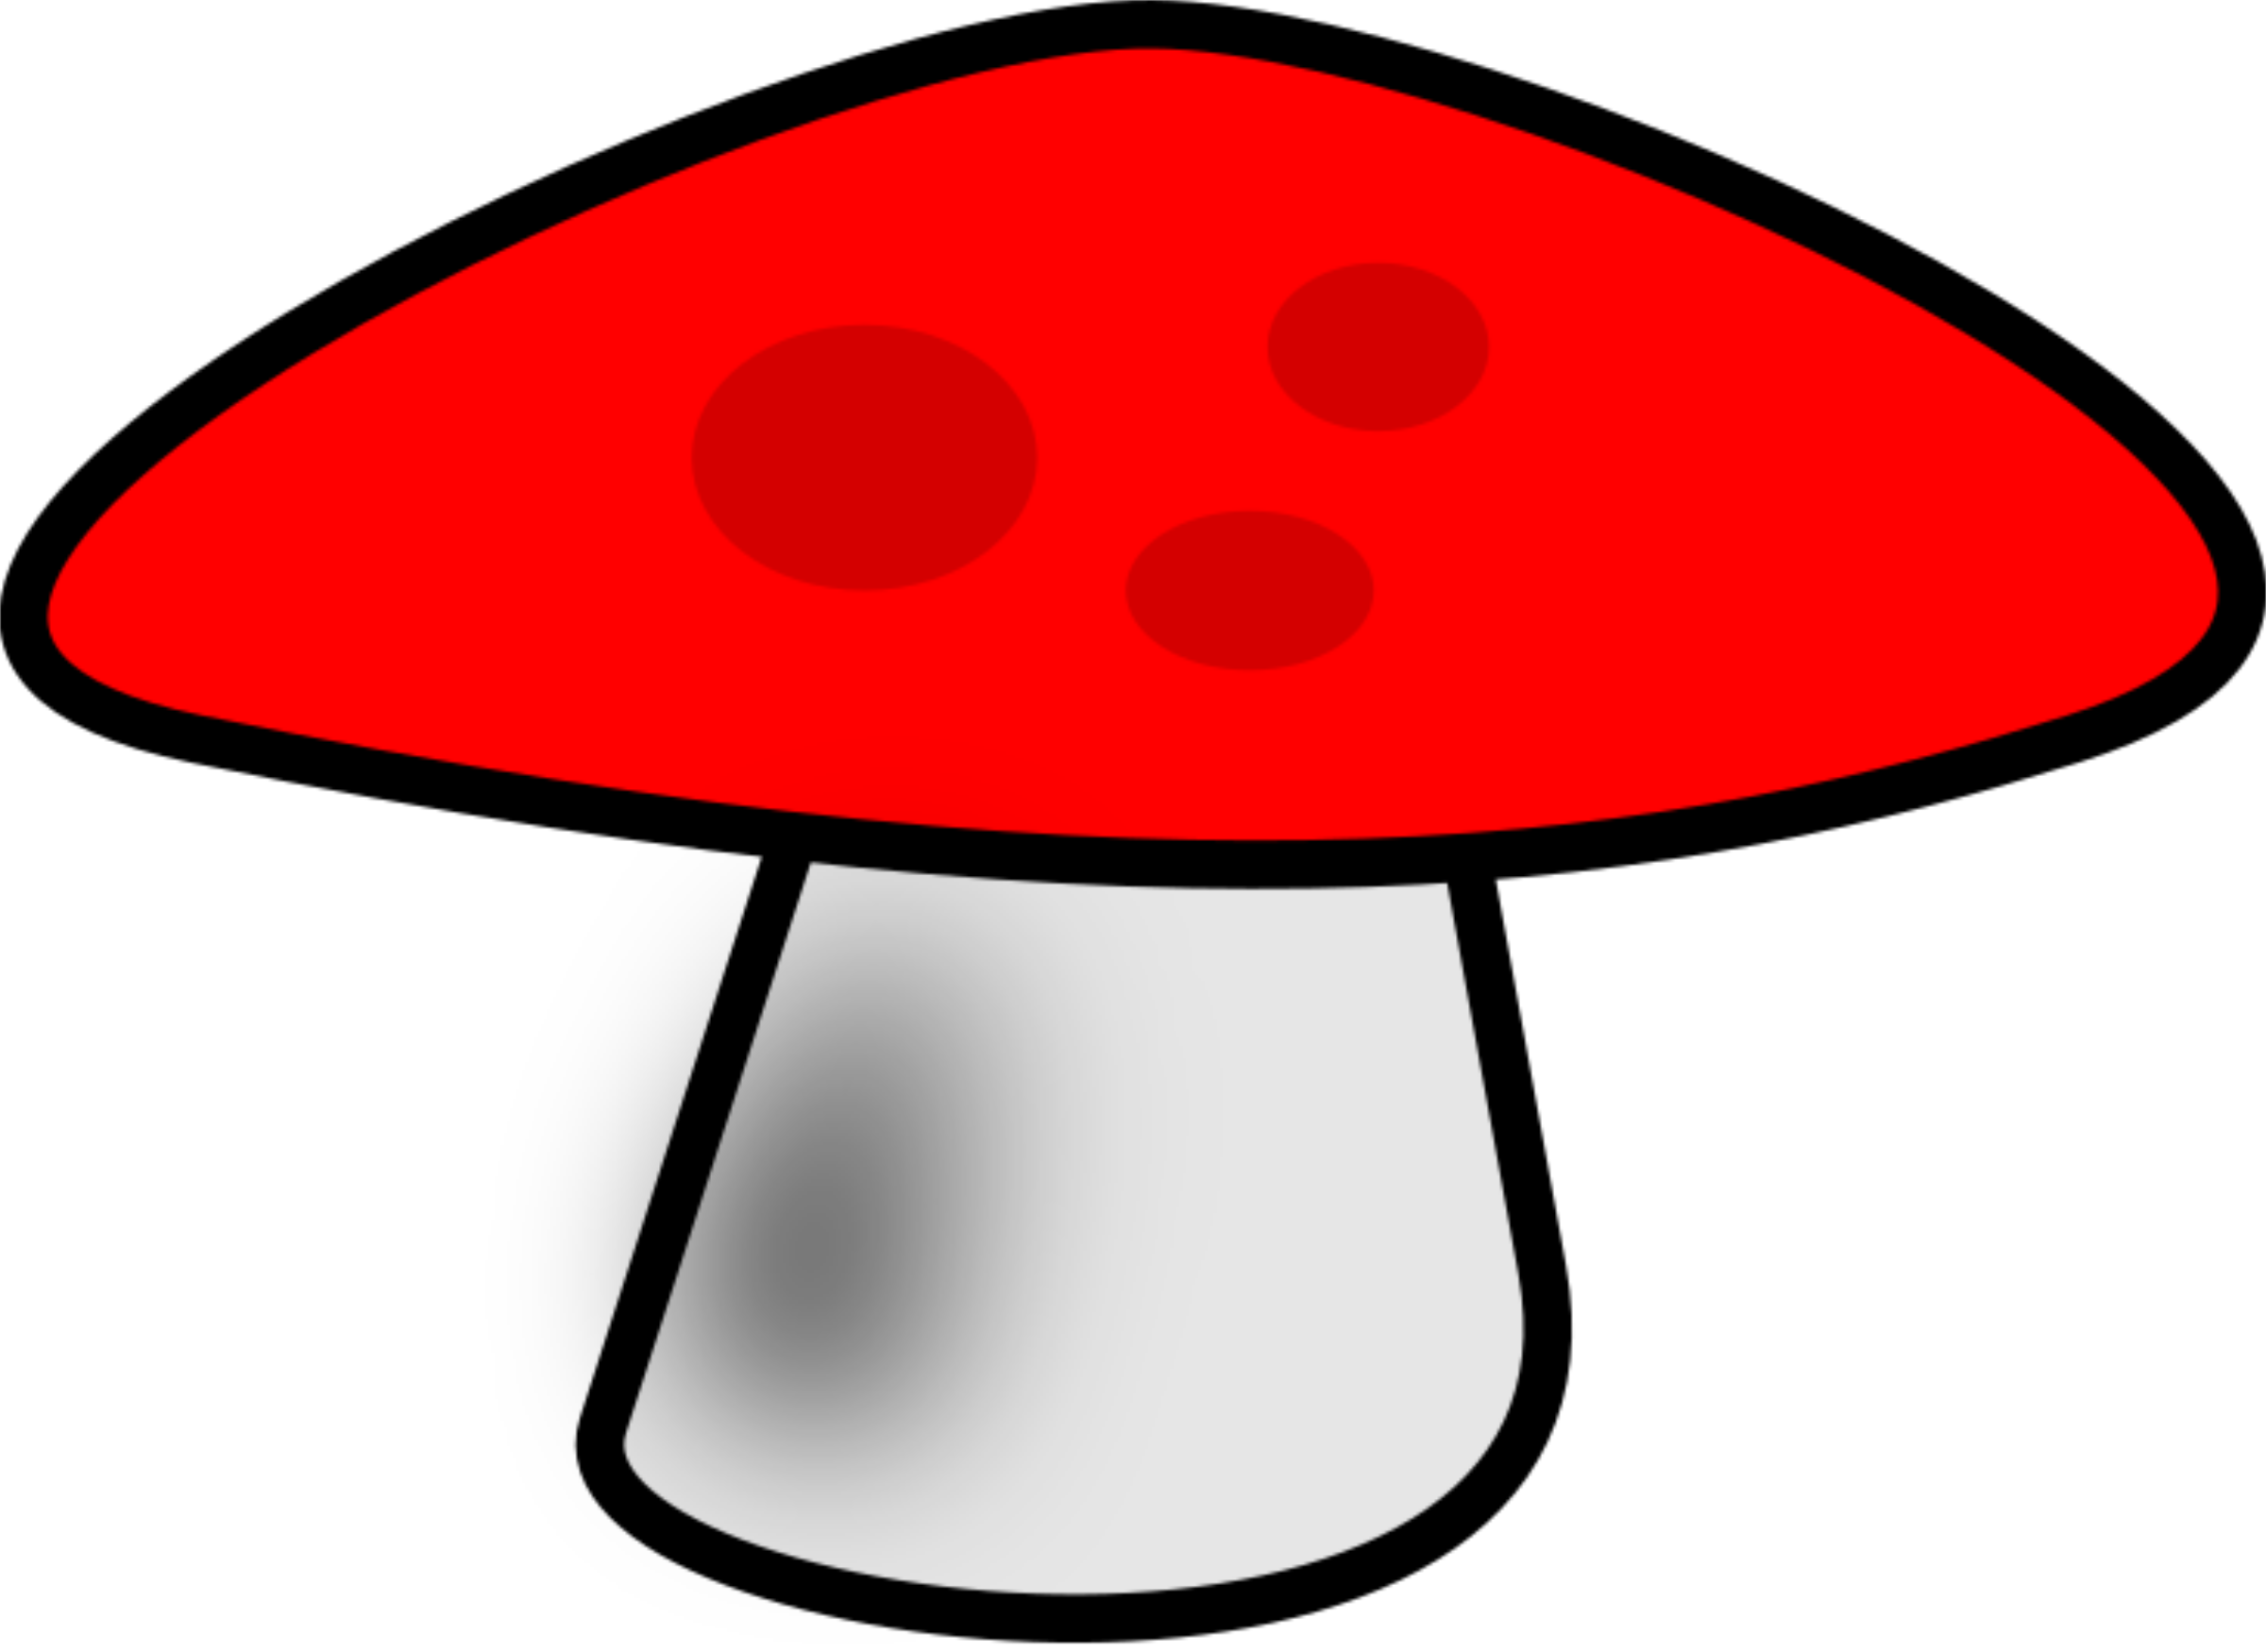 mushrooms clipart svg